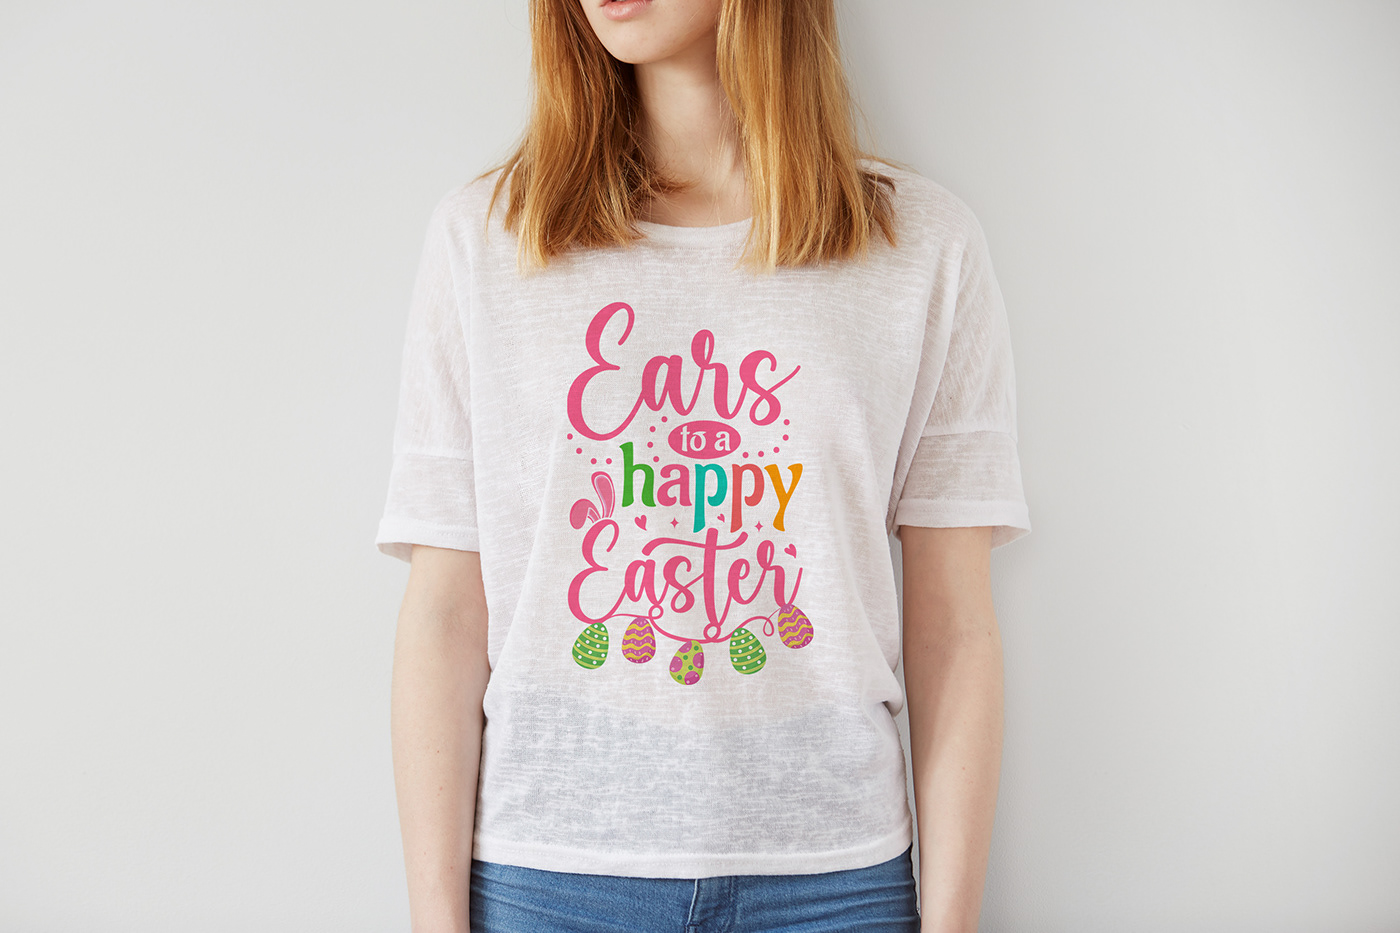 T-Shirt Design funny t-shirt bunny t-shirt design Easter Bunny T-shirt easter day t-shirt Easter T-shirt fashionable t-shirt Girls T-shirt  UNIQUE T-SHIRT DESIGN women t-shirt